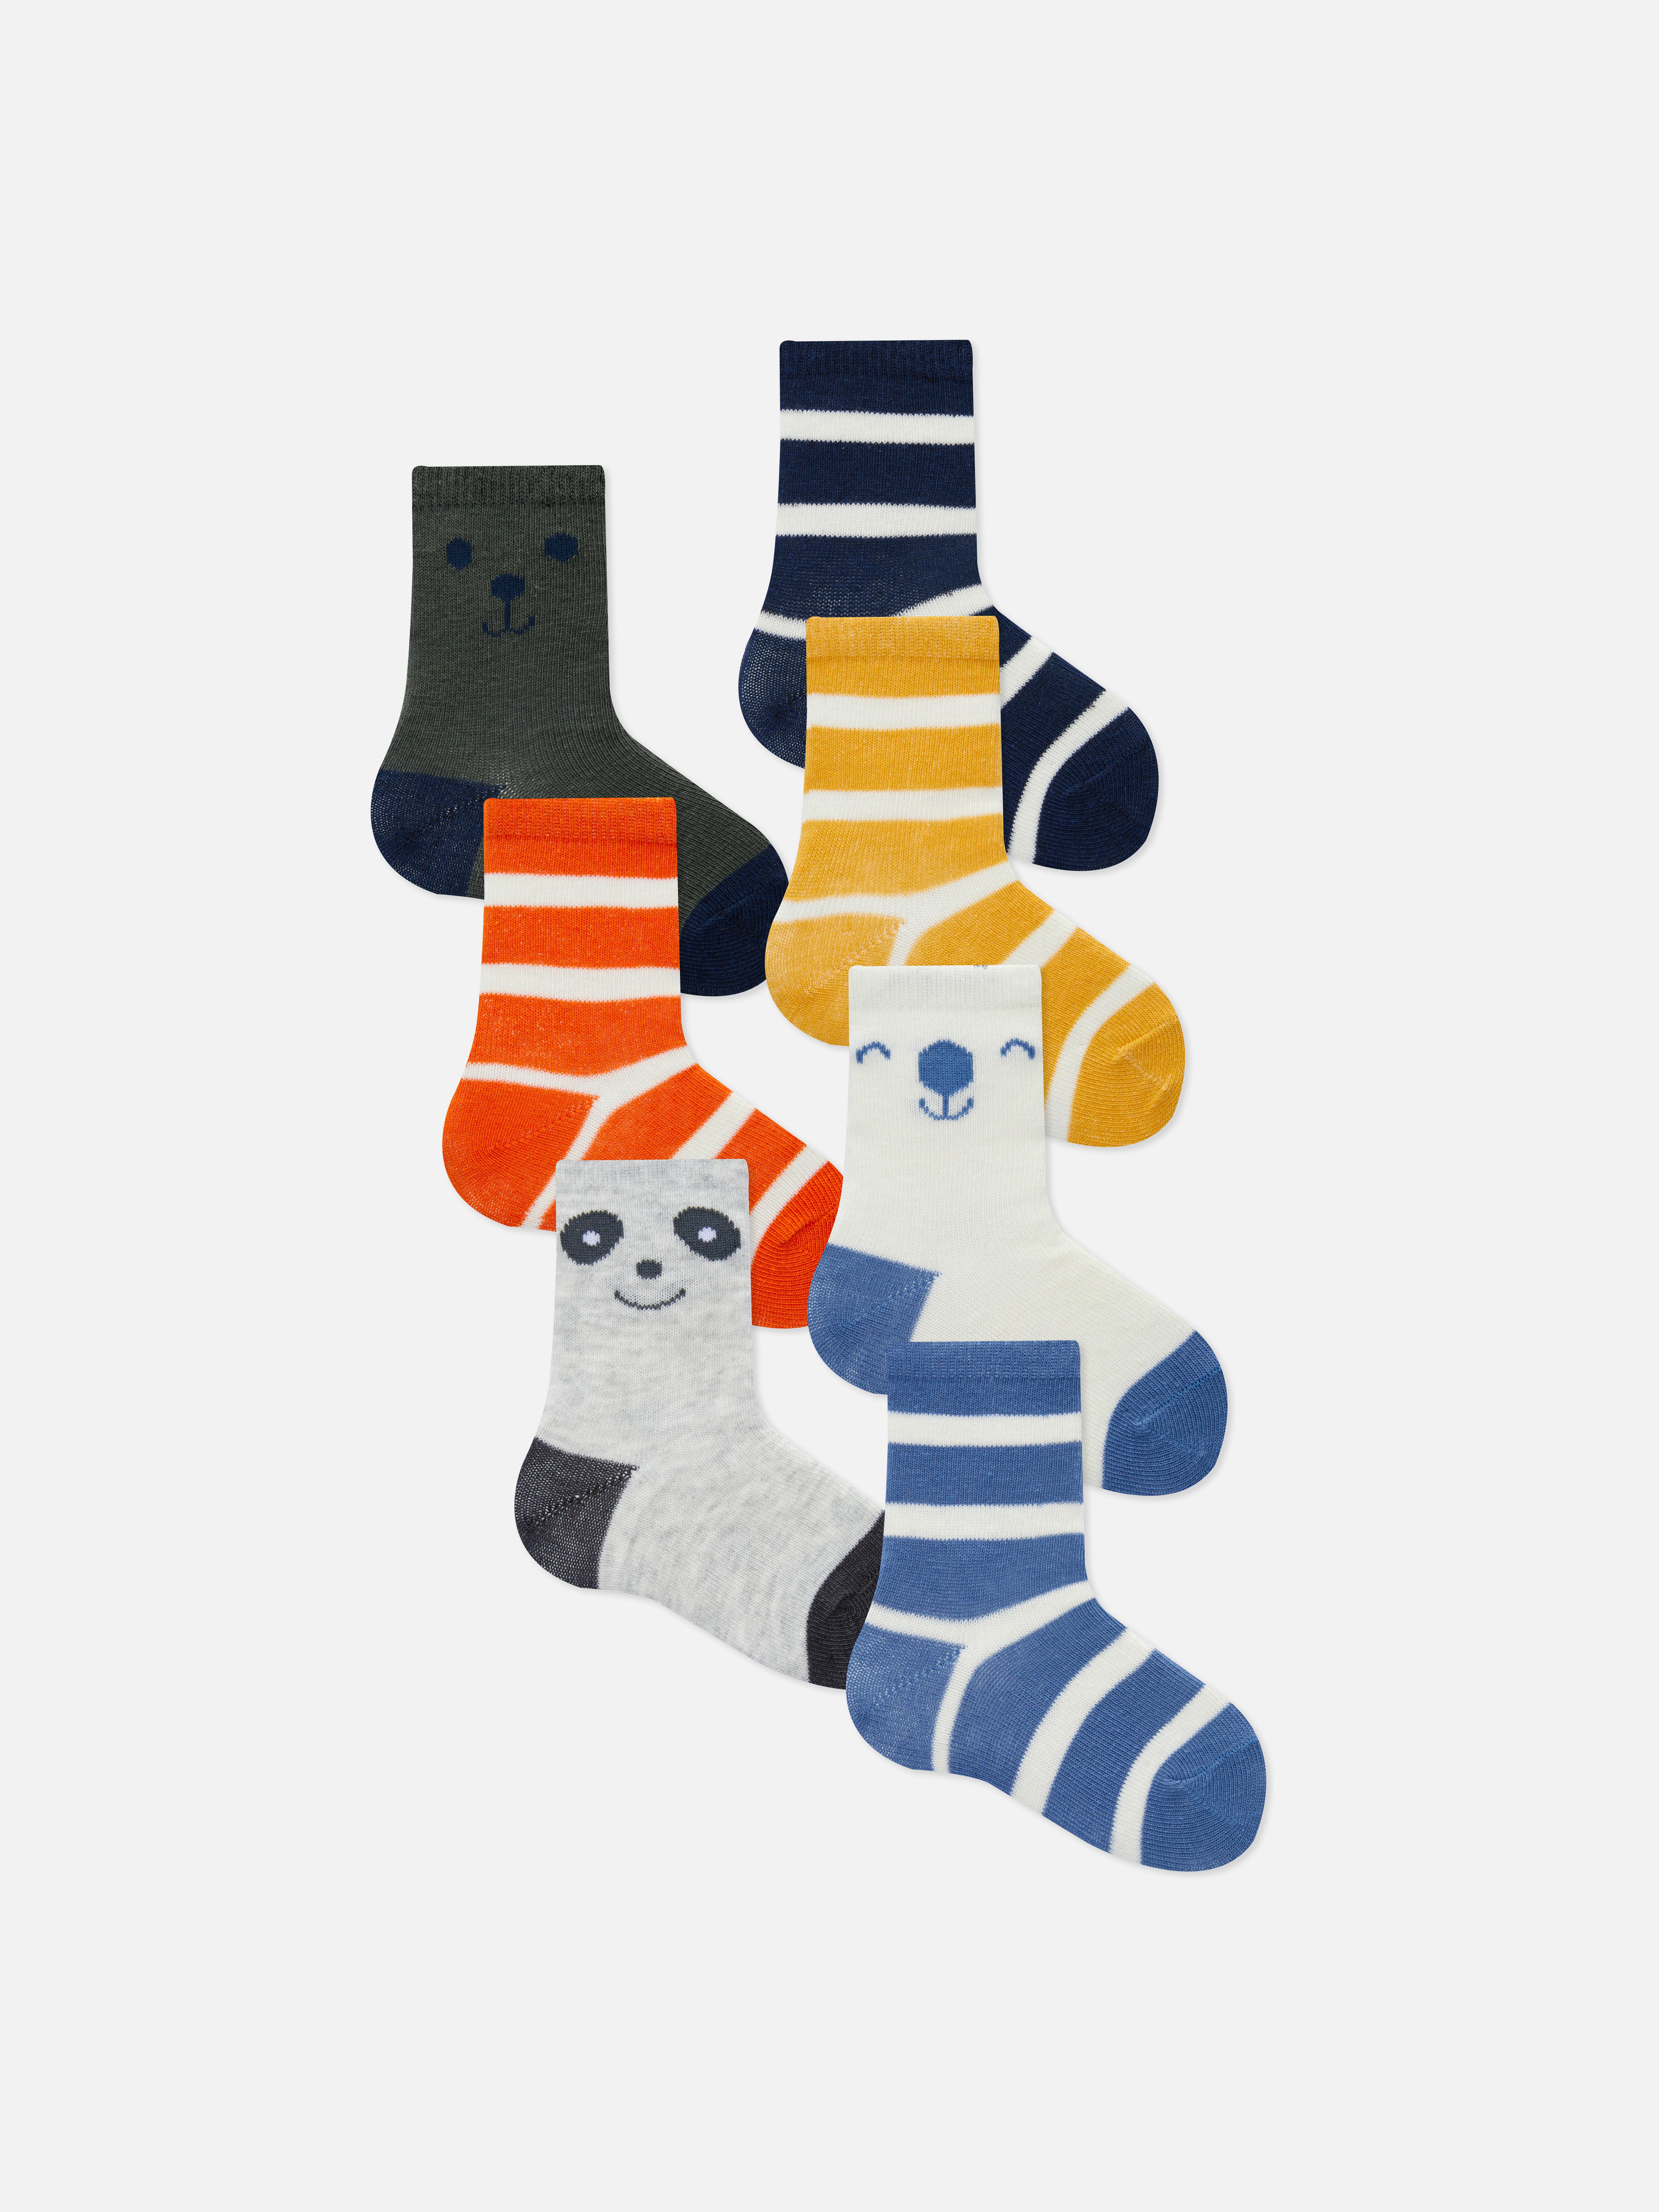 Socken mit verschiedenen Mustern, 7er-Pack